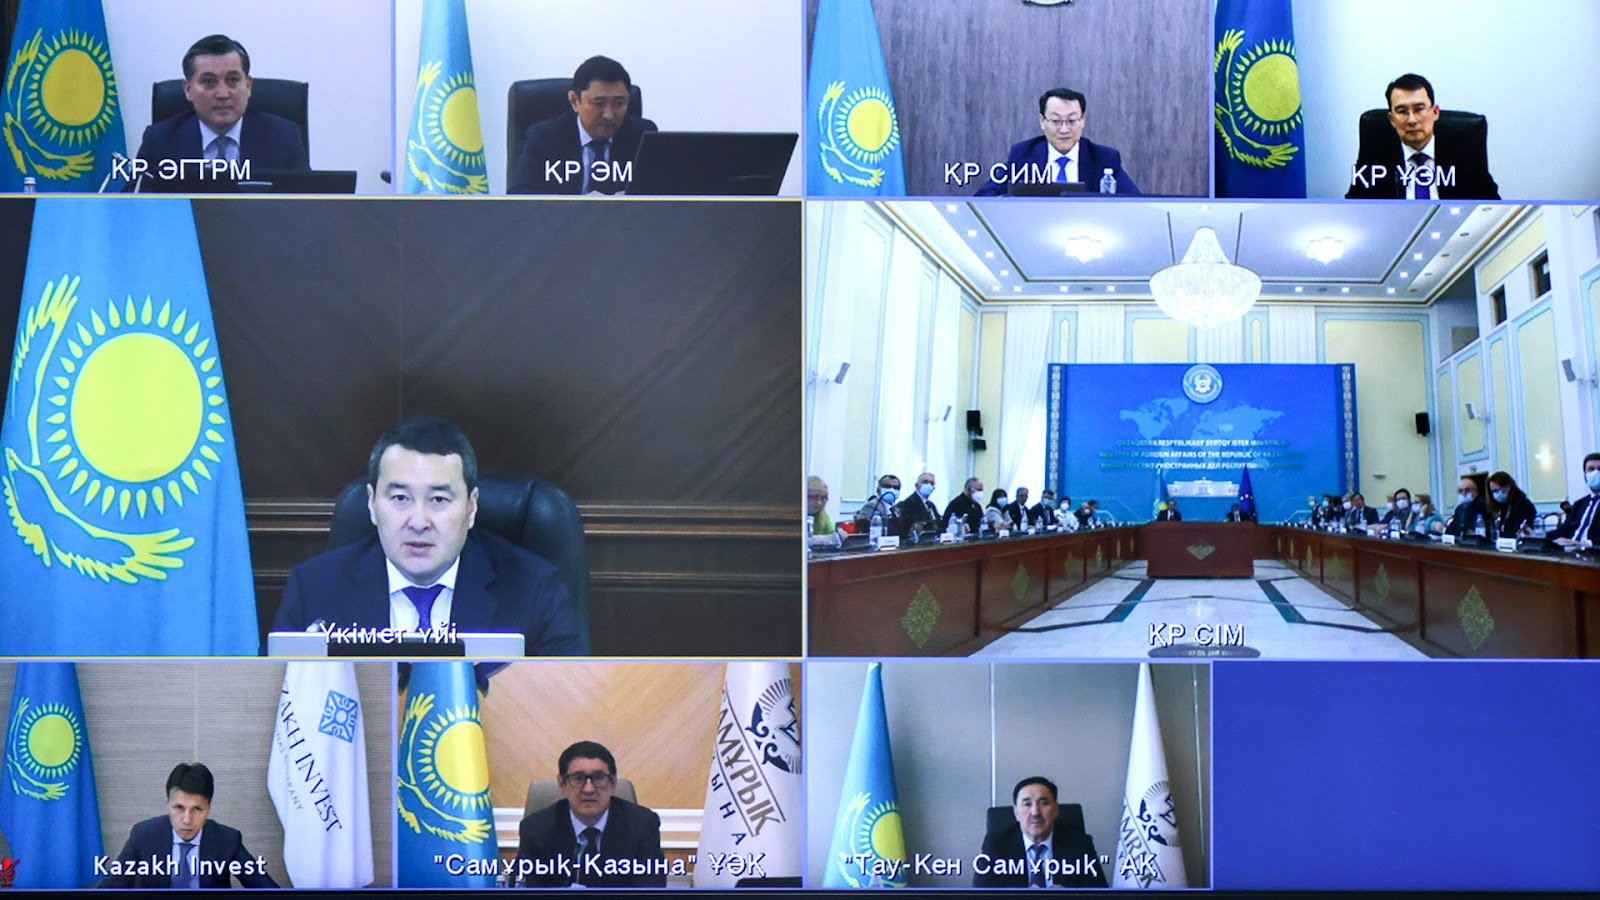 Kazahstāna paplašina ieguves rūpniecības partnerību ar ES valstīm, saka Kazahstānas premjerministrs Alikans Smailovs